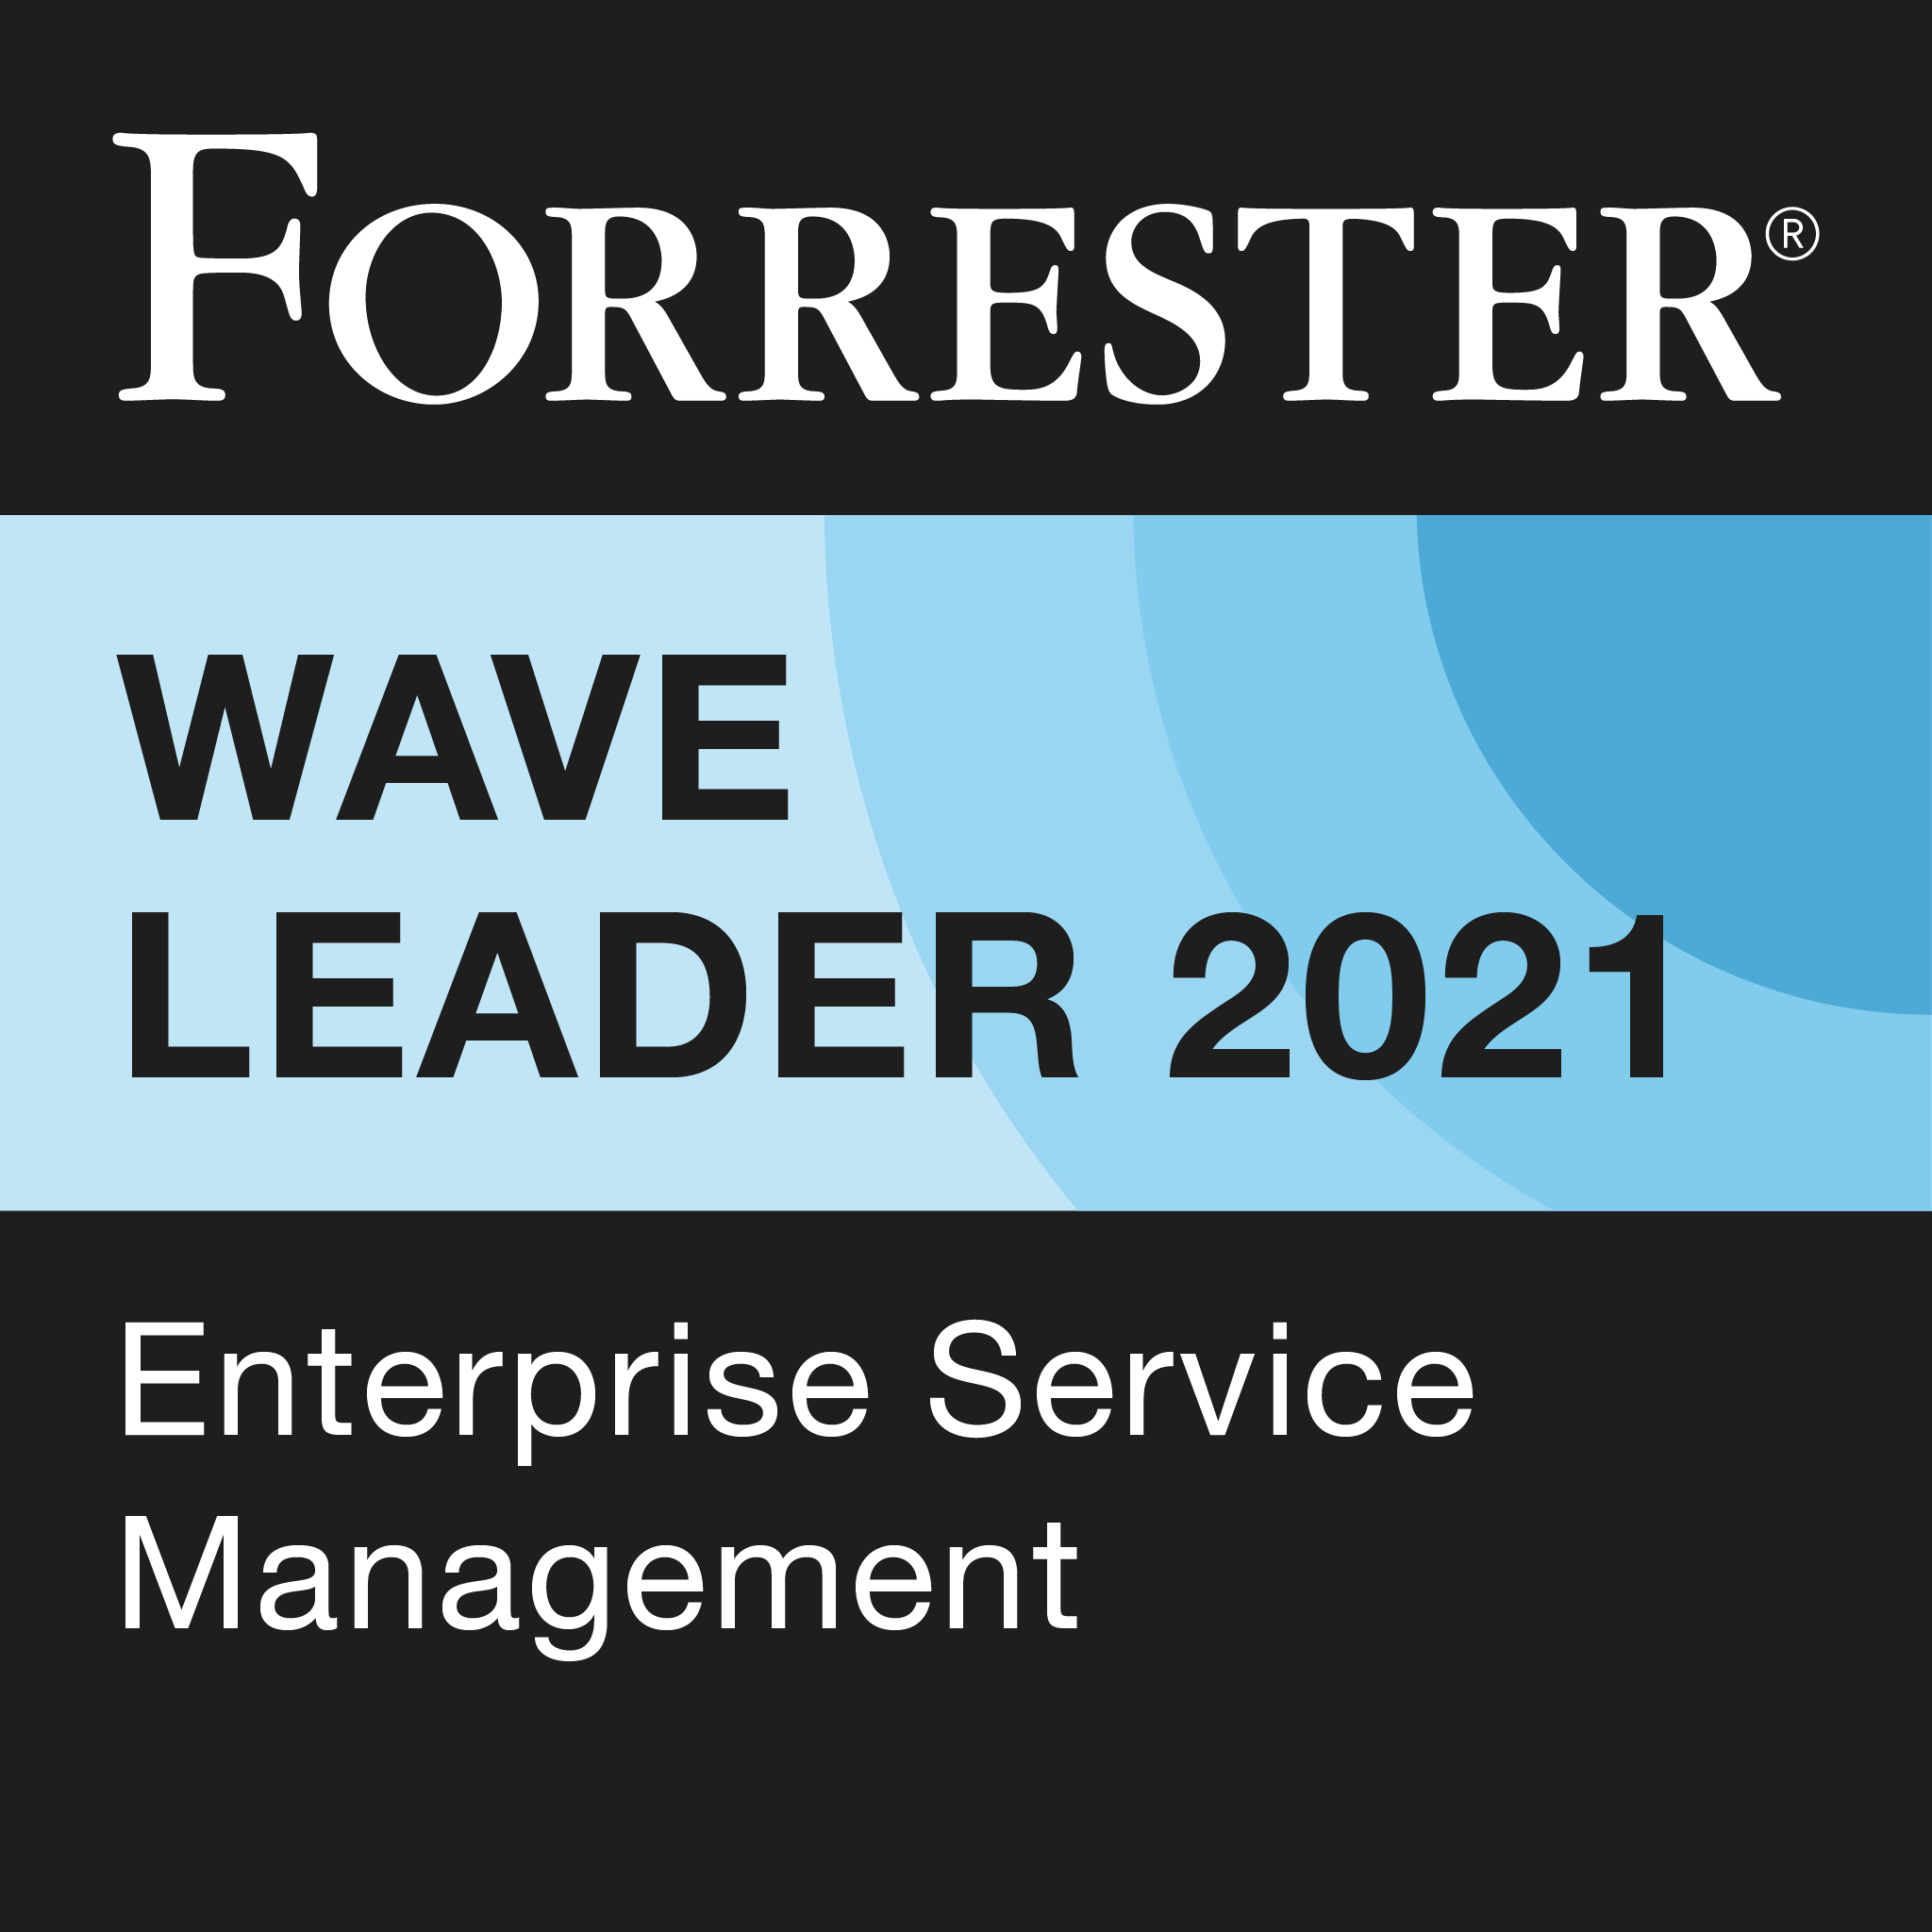 Líder en la Forrester Wave sobre gestión de servicios empresariales de 2021